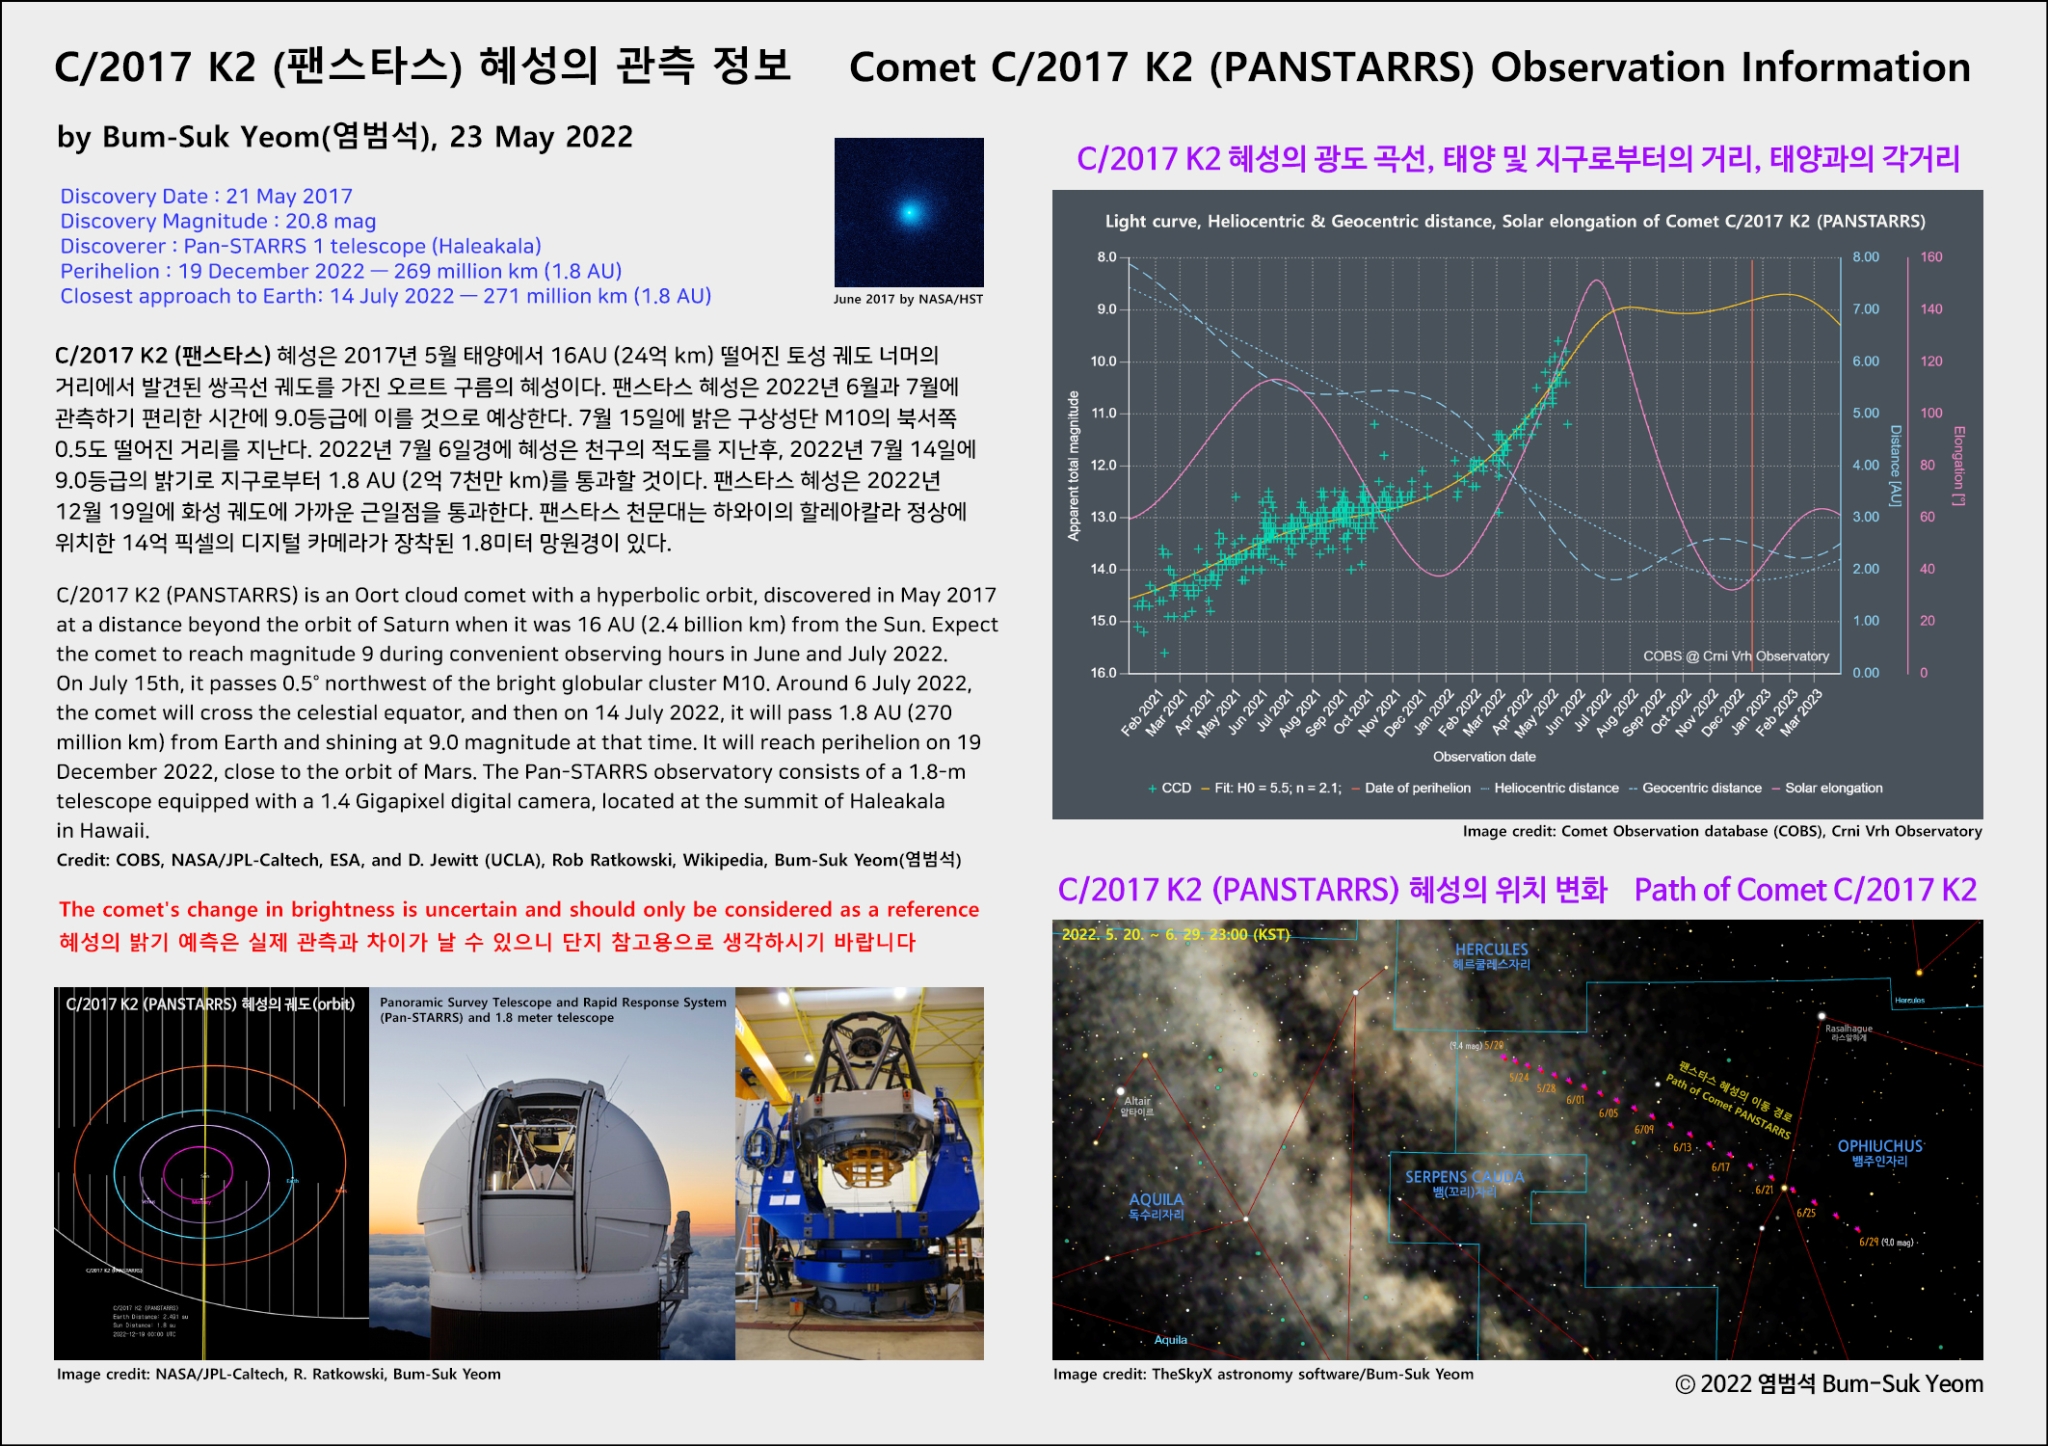 comet_panstarrs_c2017k2_info_web_bsyeom